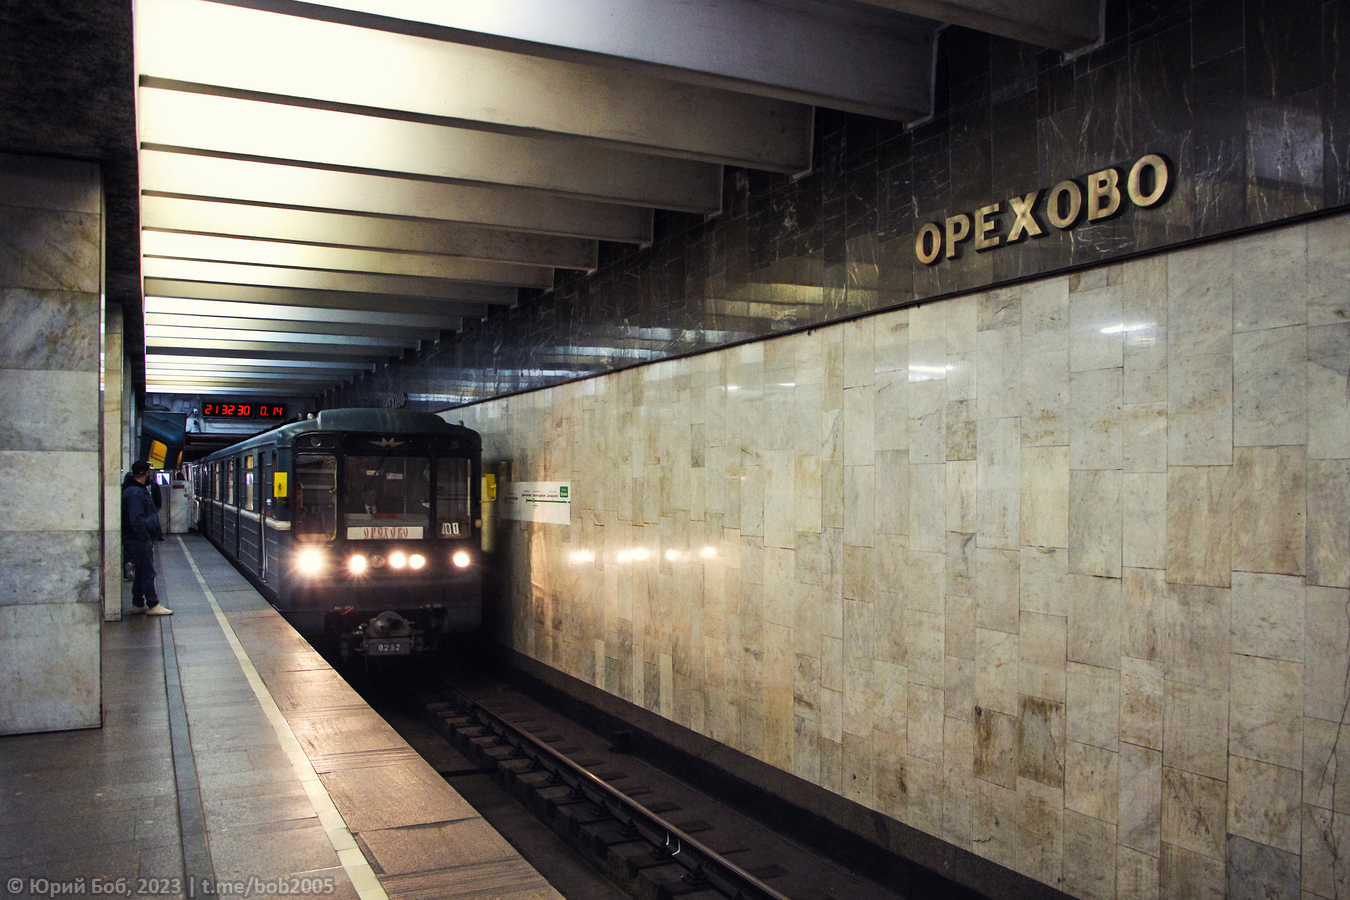 莫斯科 — Metro — [2] Zamoskvoretskaya Line